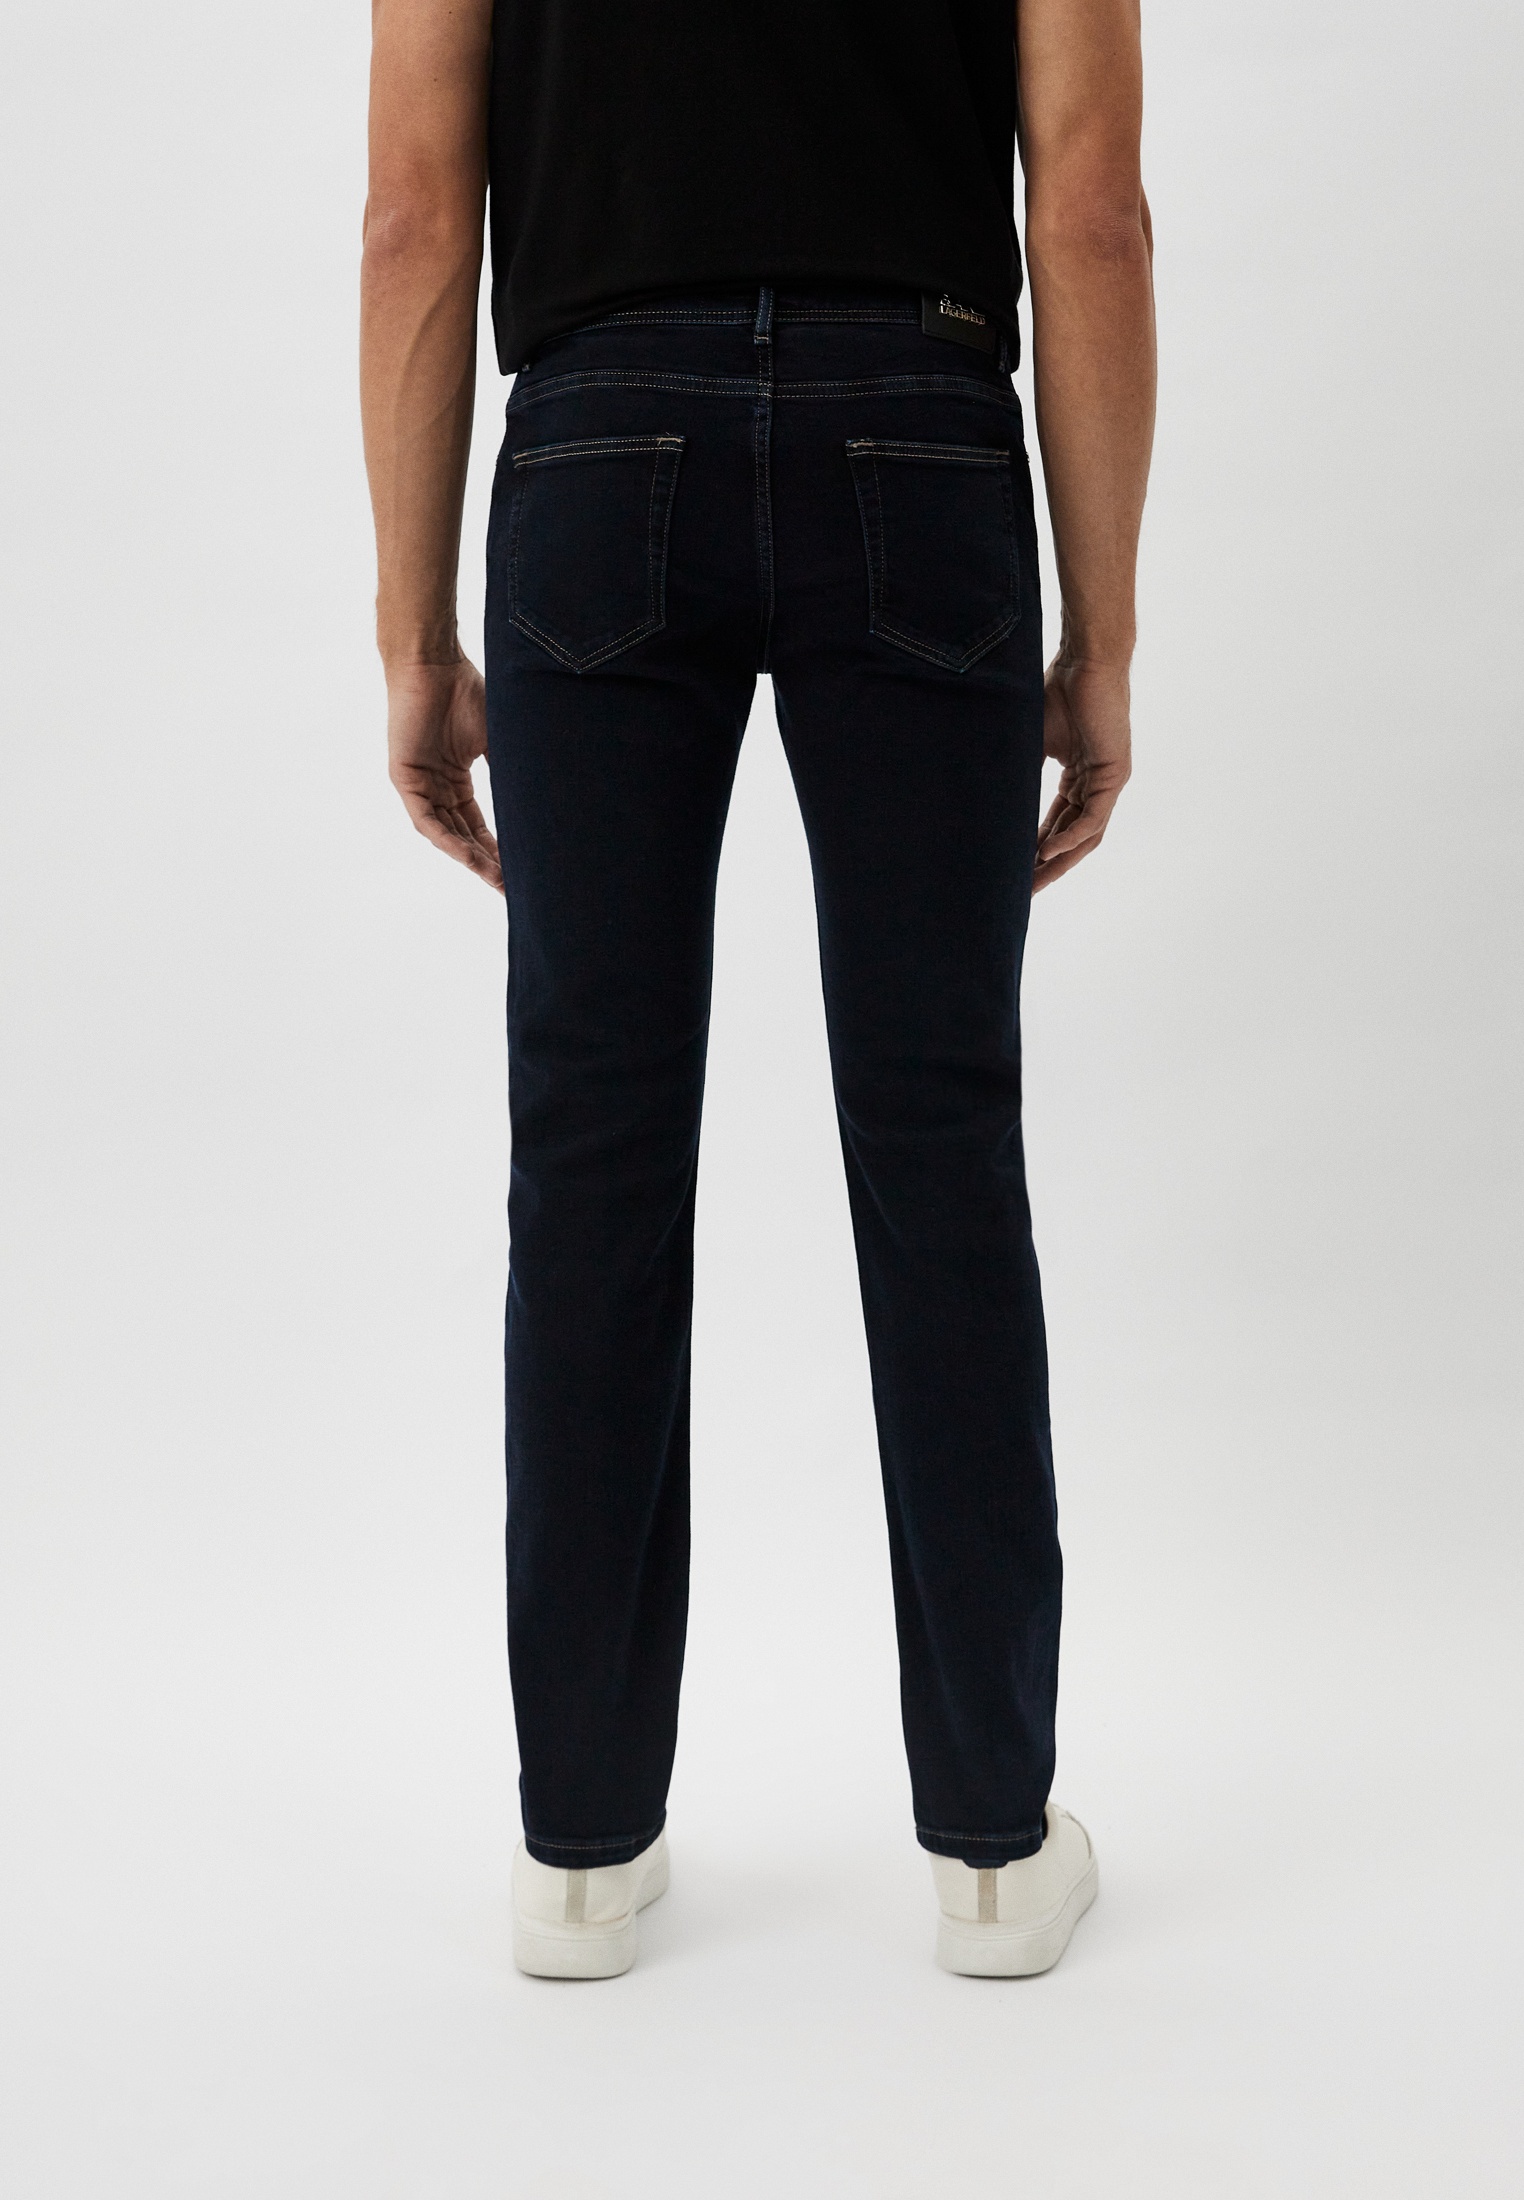 Мужские зауженные джинсы Karl Lagerfeld (Карл Лагерфельд) 265840-500830: изображение 15